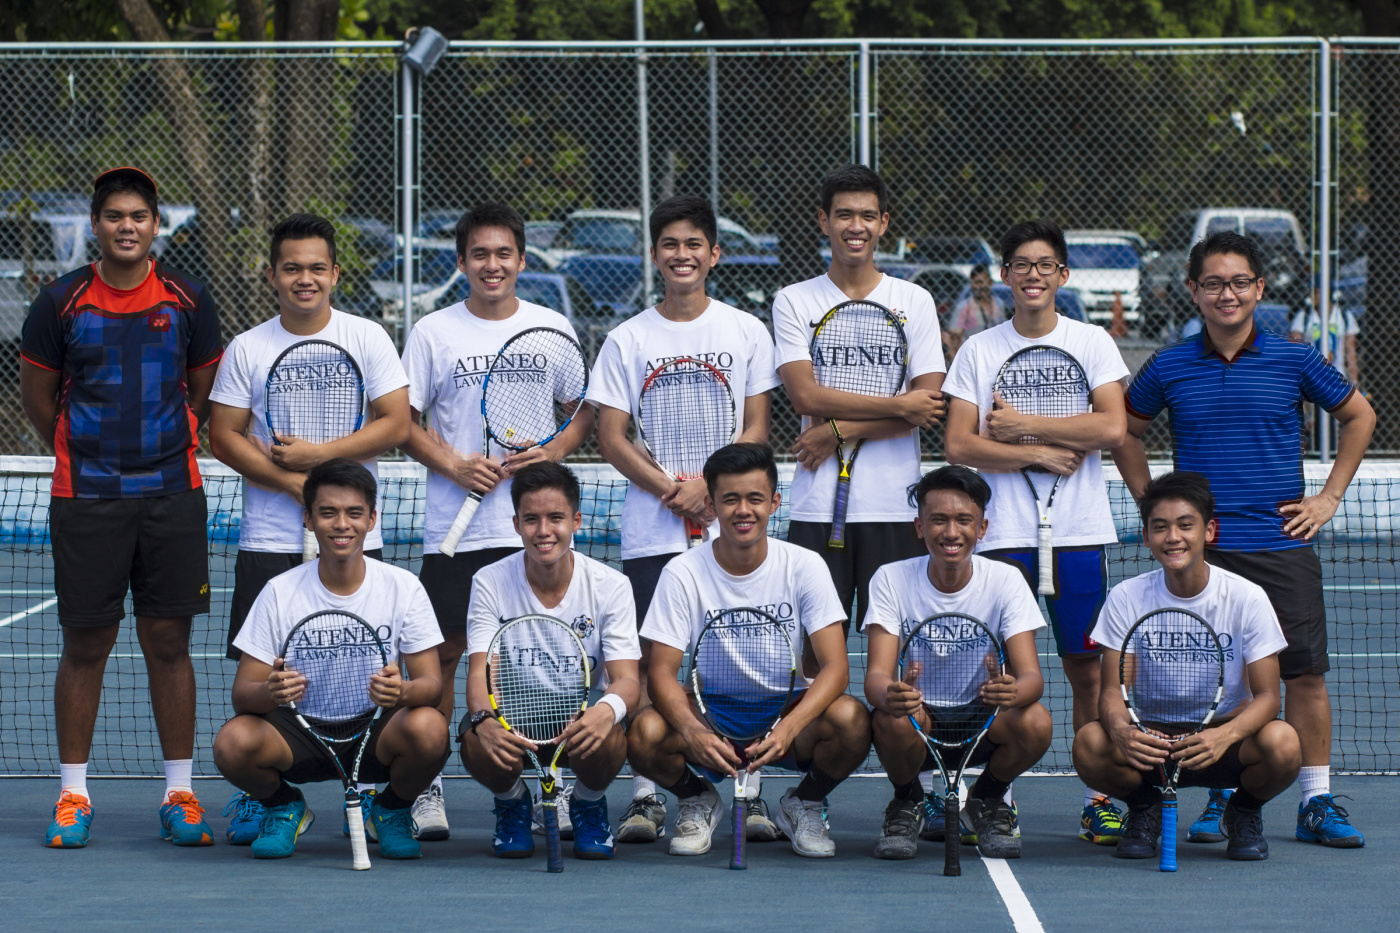 011816-Men's Lawn Tennis Team-Sarmiento-01